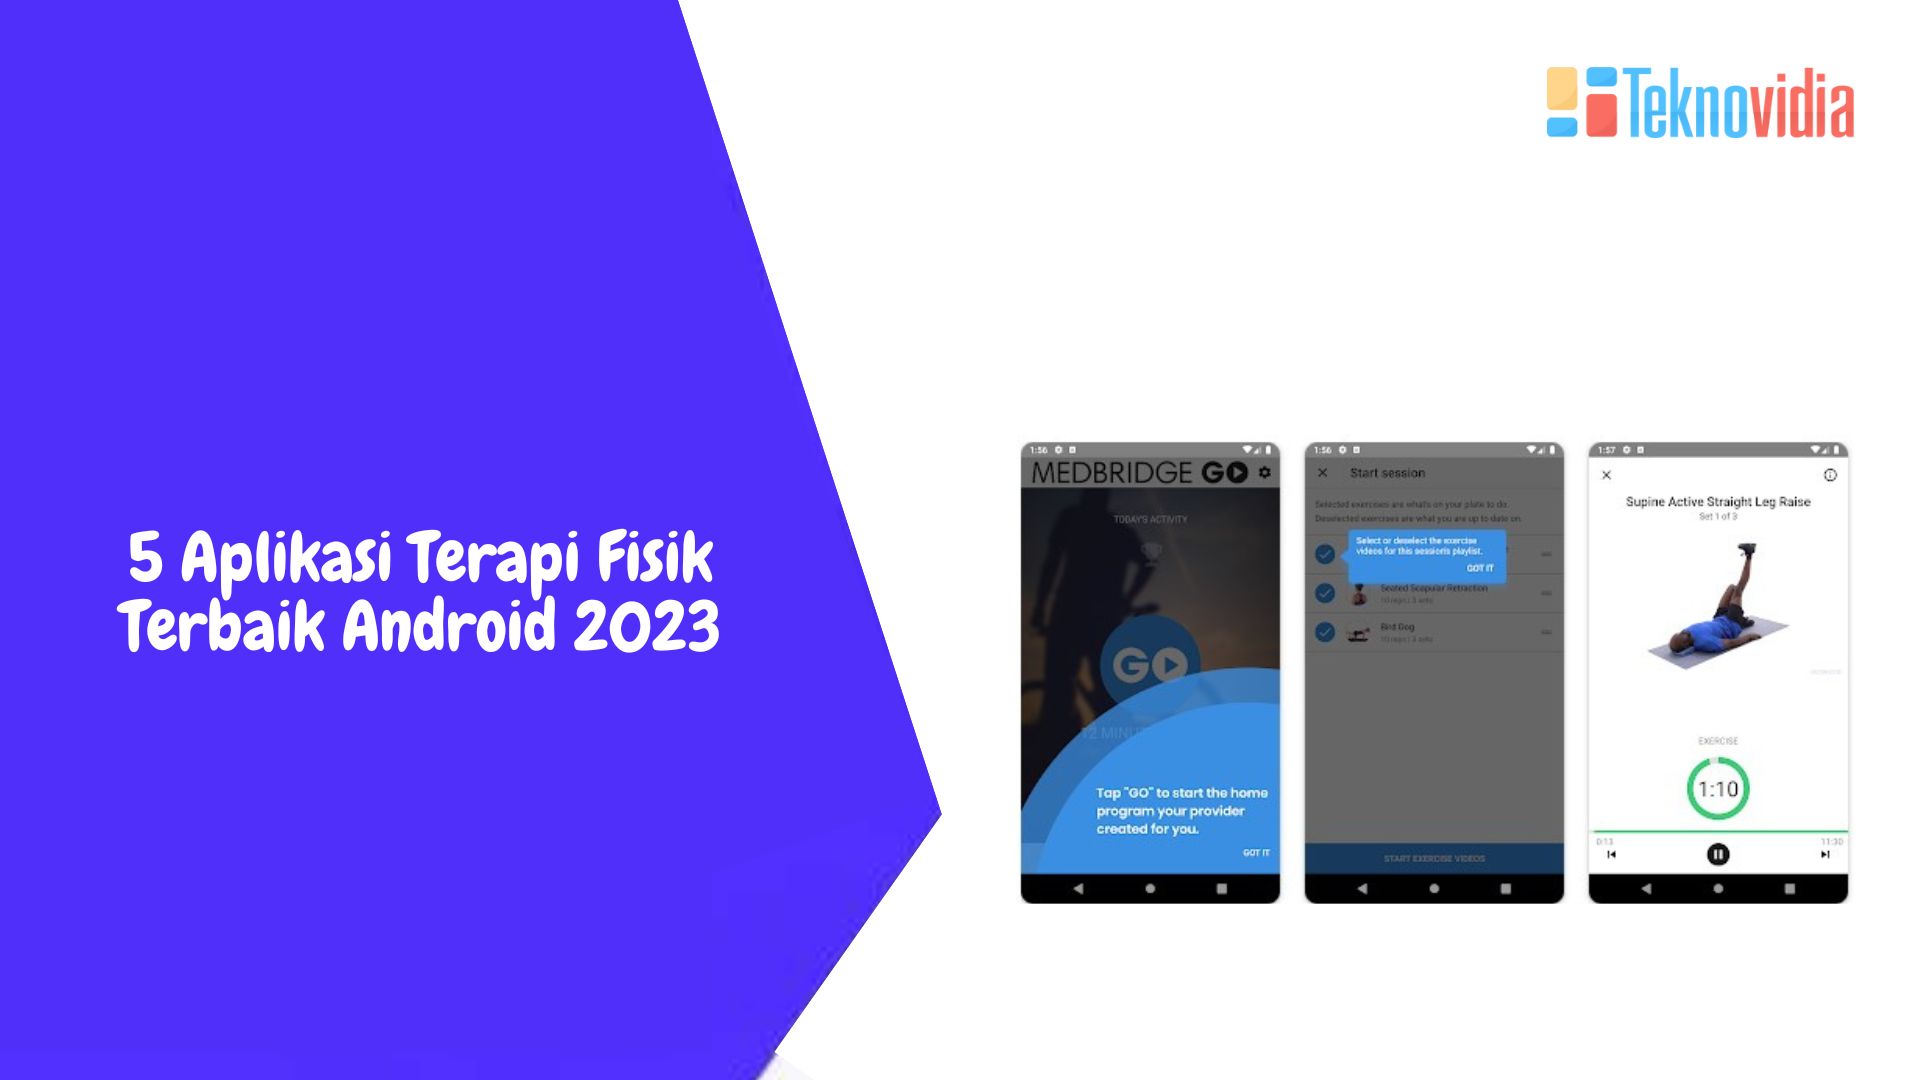 5 Aplikasi Terapi Fisik Terbaik Android 2023